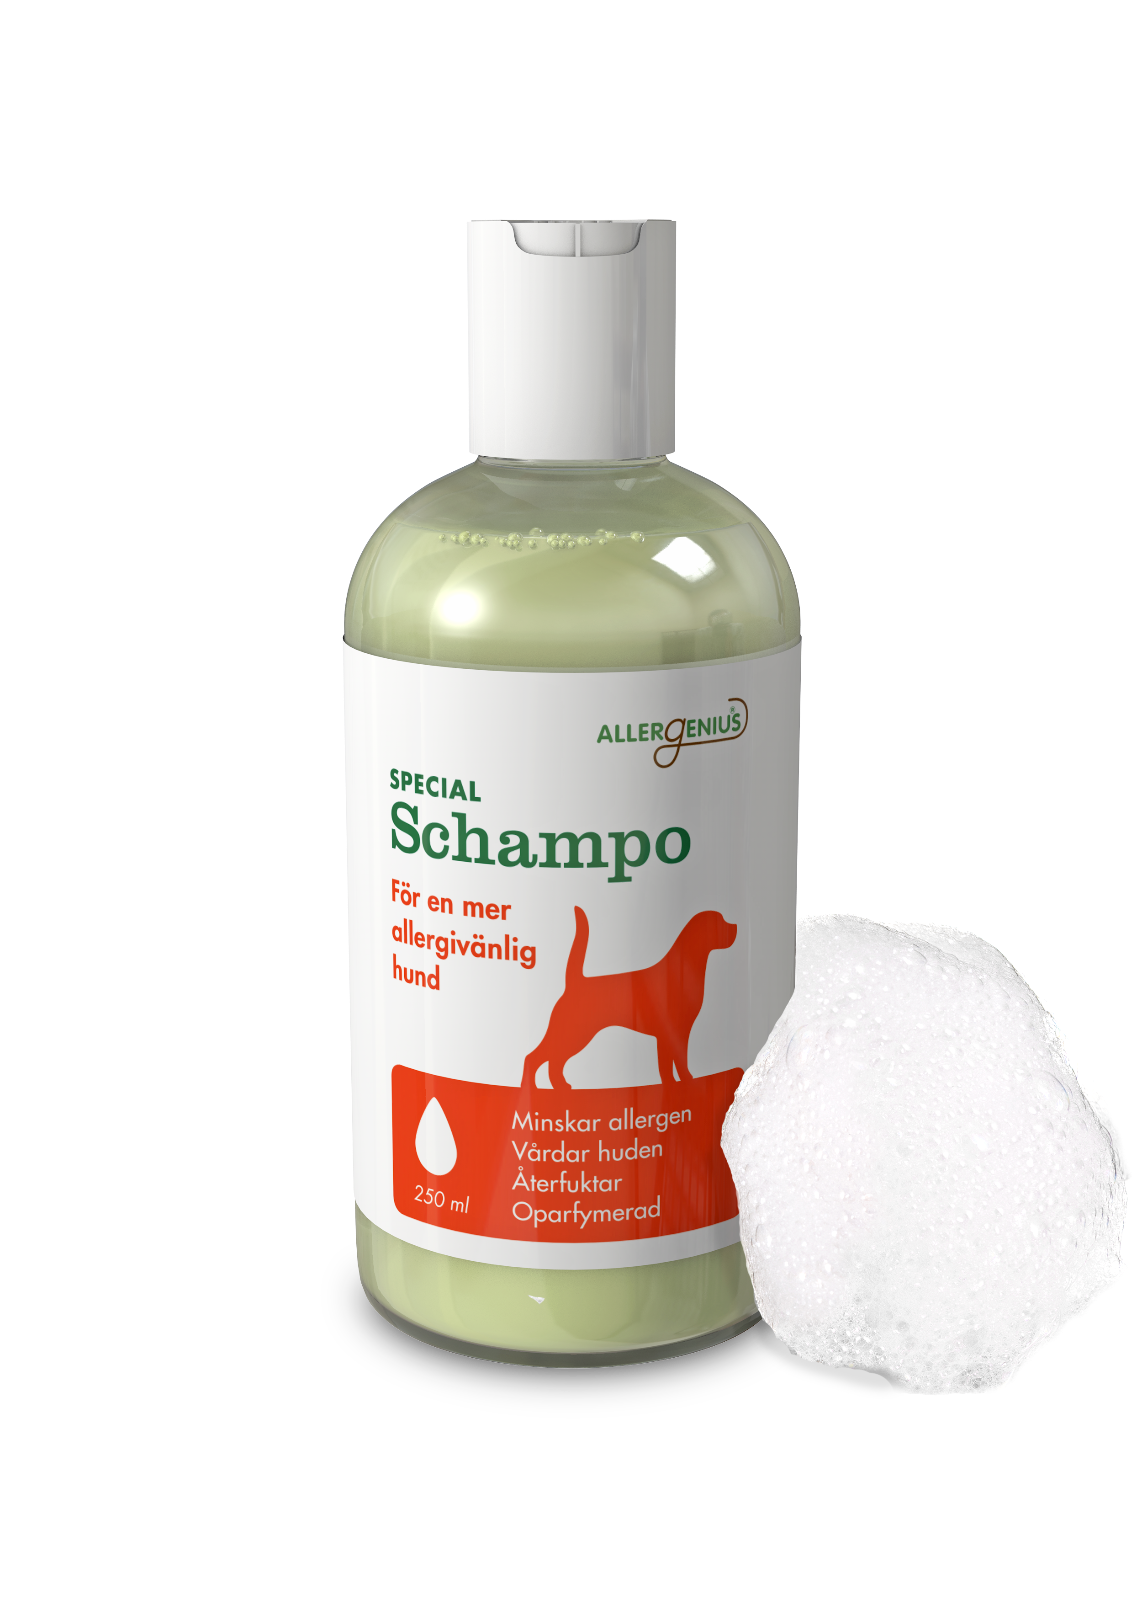 Allergenius® Dog Specialschampo